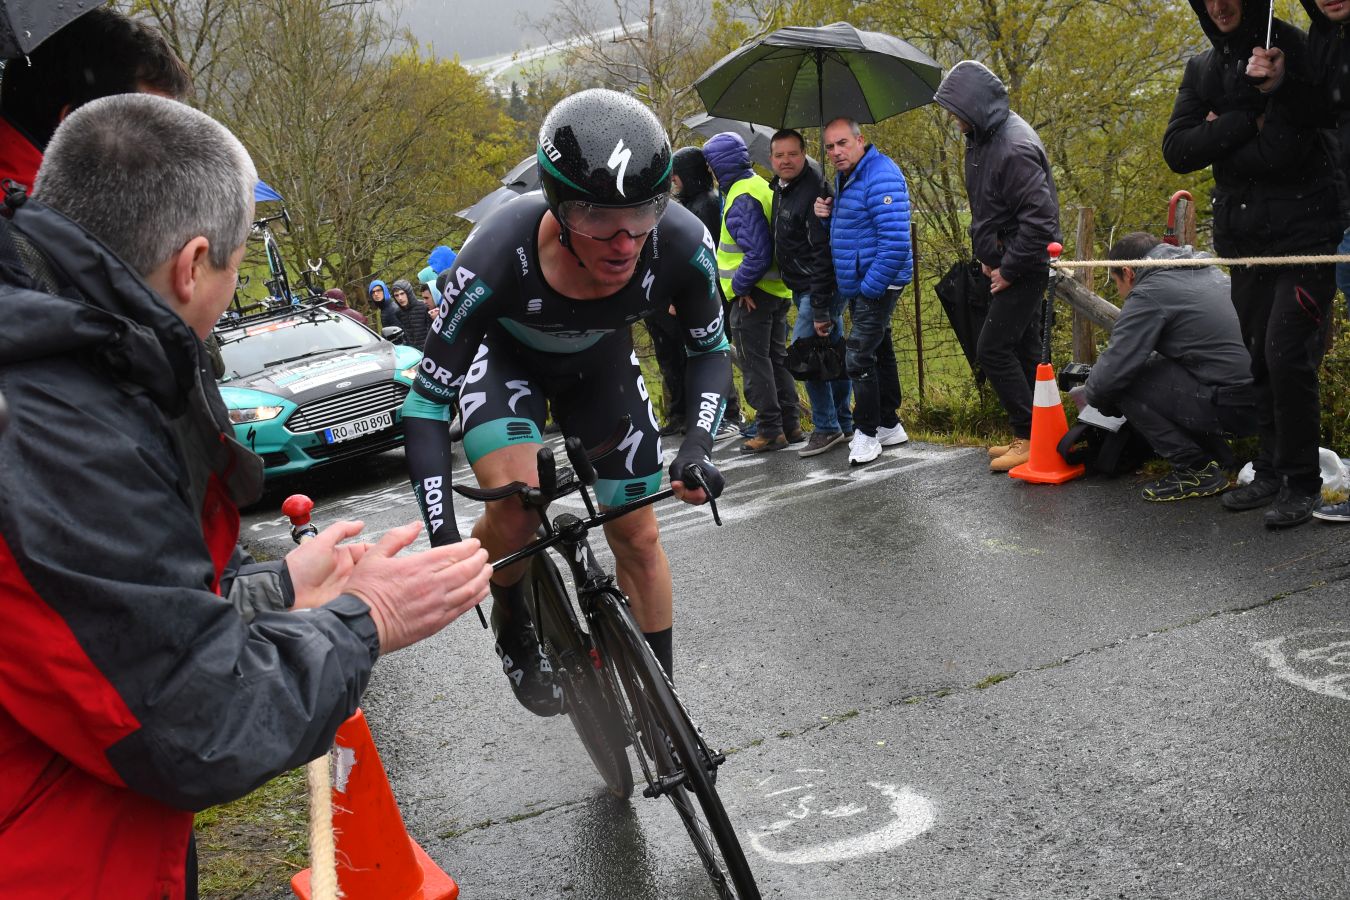 El alemán Maximilian Schachmann (Bora) ha ganado la contrarreloj de Zumarraga y se convierte en el primer líder de la Vuelta al País Vasco 2019.